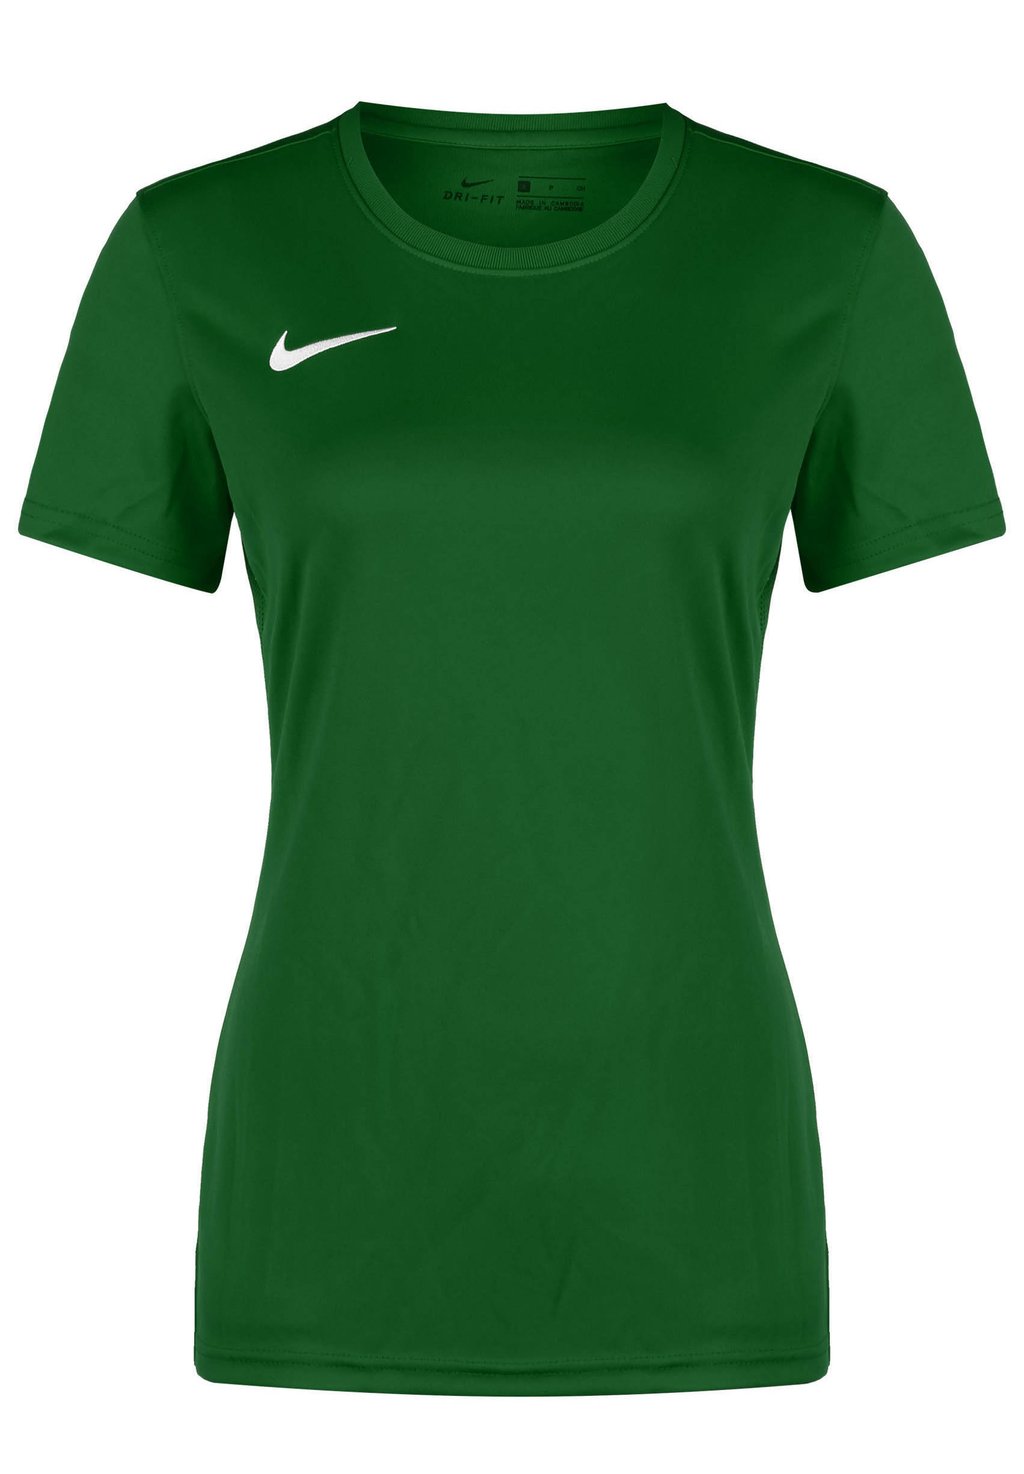 Футболка базовая DRY PARK VII Nike, цвет pine green / white кроссовки clae bradley california unisex white pine green